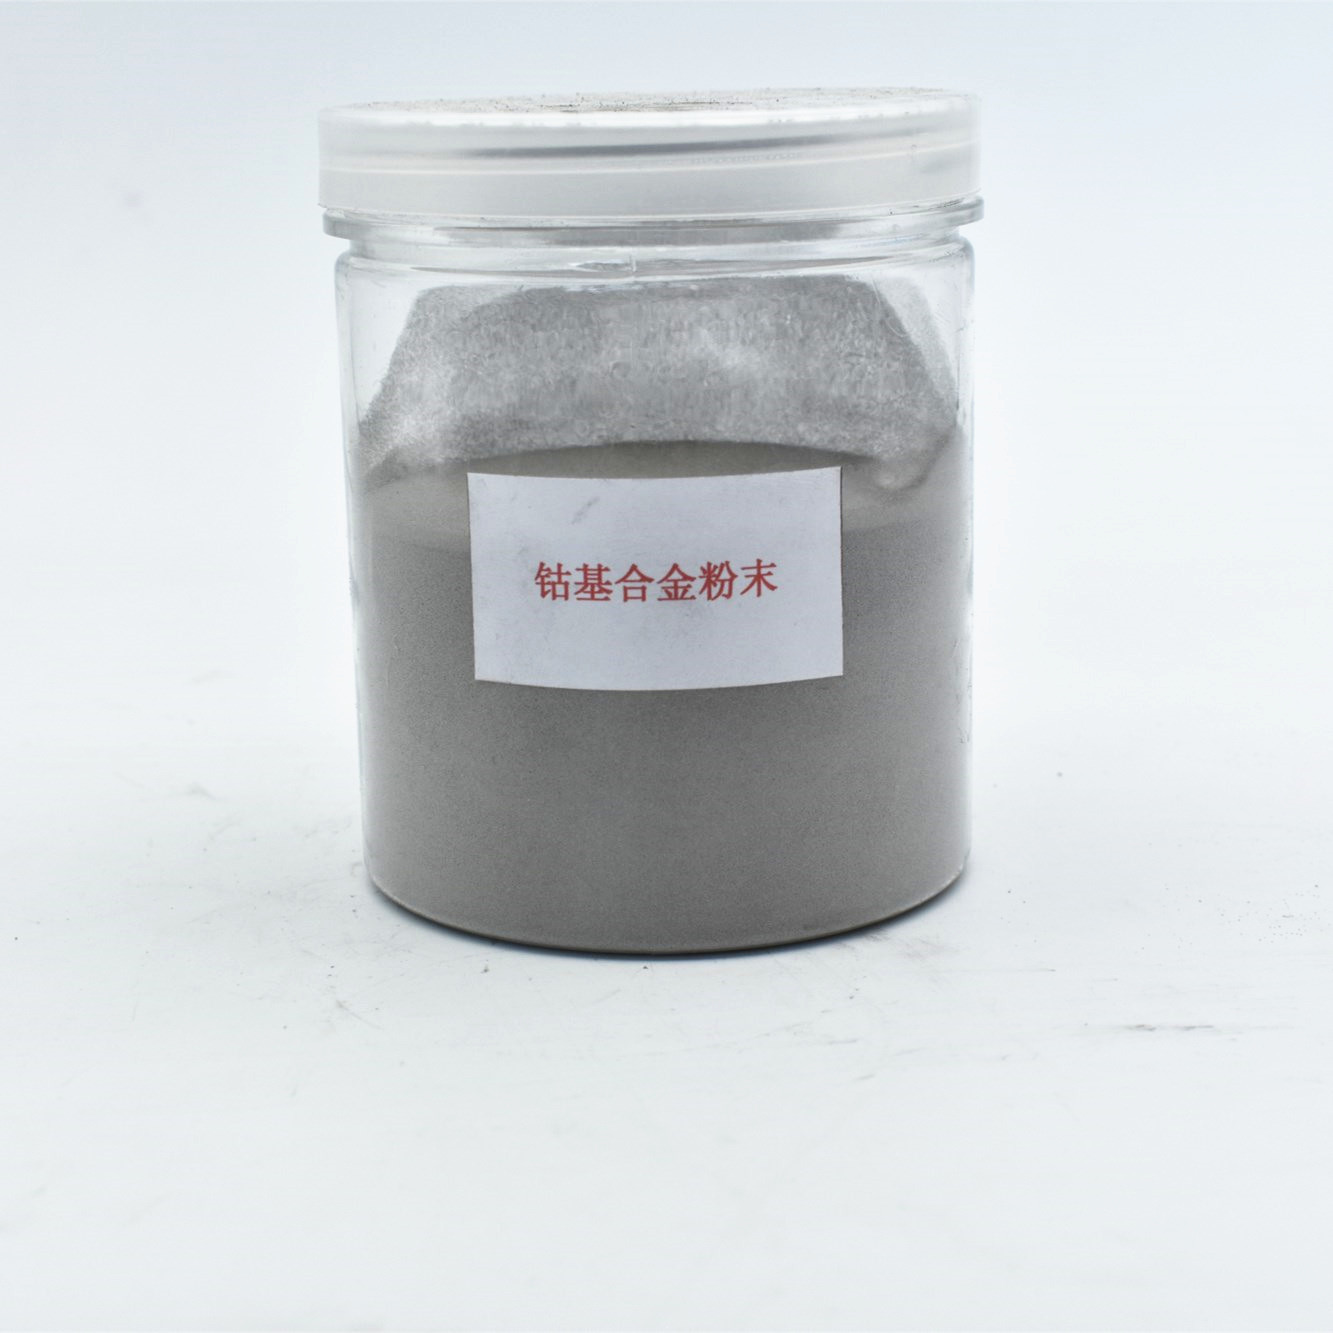 硬度65-70钴基合金粉末 喷焊喷涂粉末 合金粉末 热喷涂粉末 钴粉